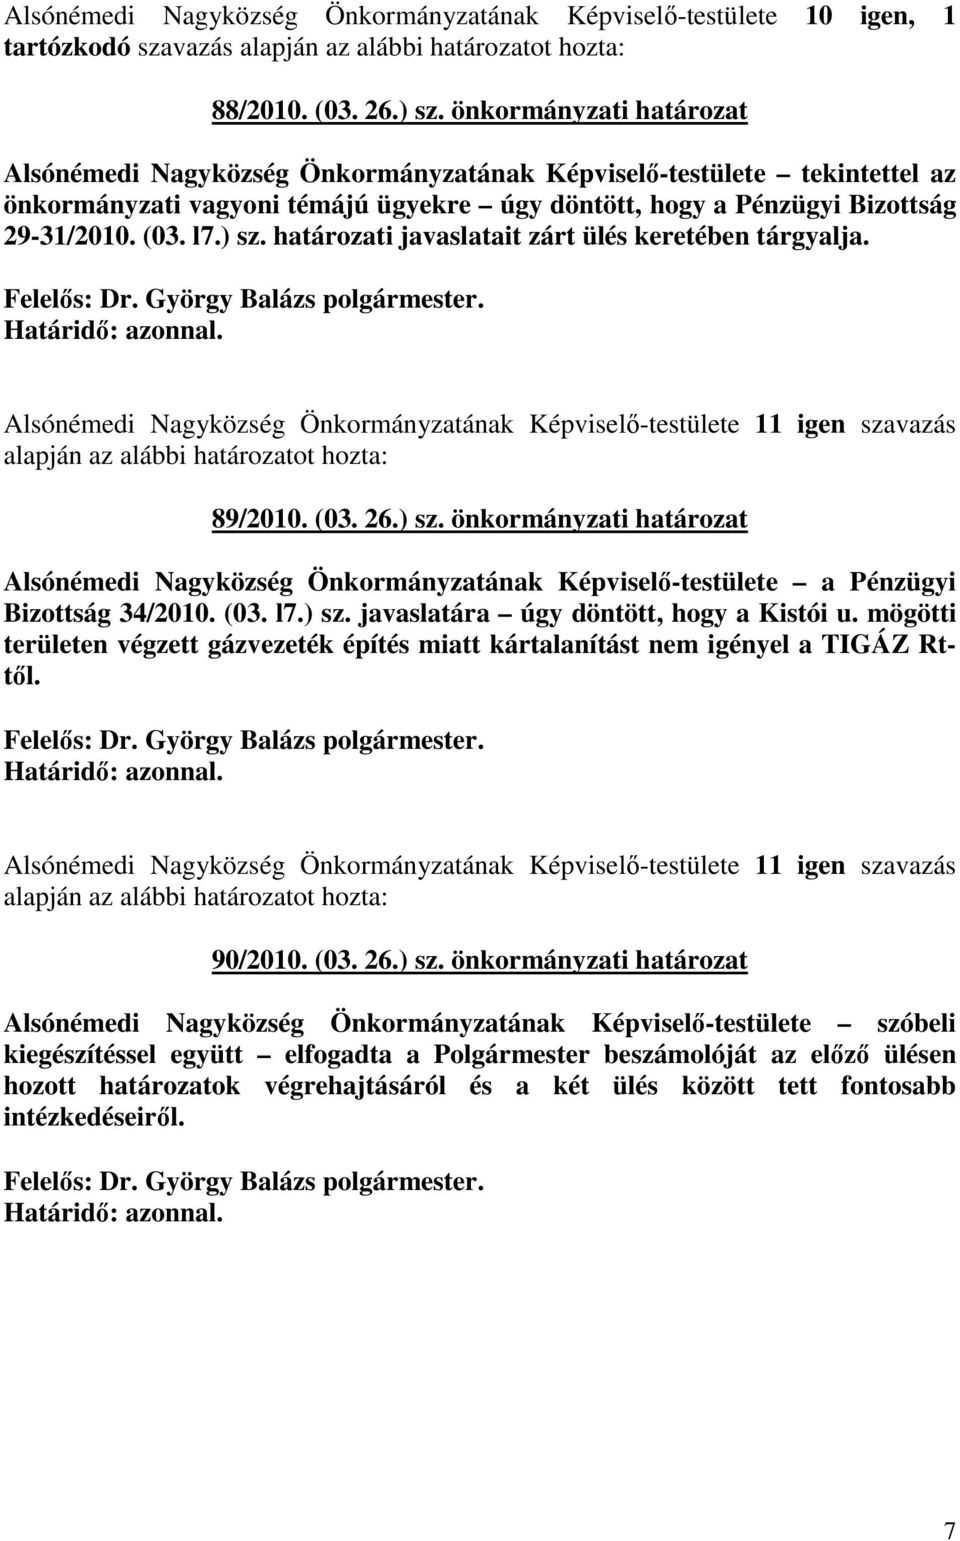 határozati javaslatait zárt ülés keretében tárgyalja. Alsónémedi Nagyközség Önkormányzatának Képviselı-testülete 11 igen szavazás 89/2010. (03. 26.) sz.